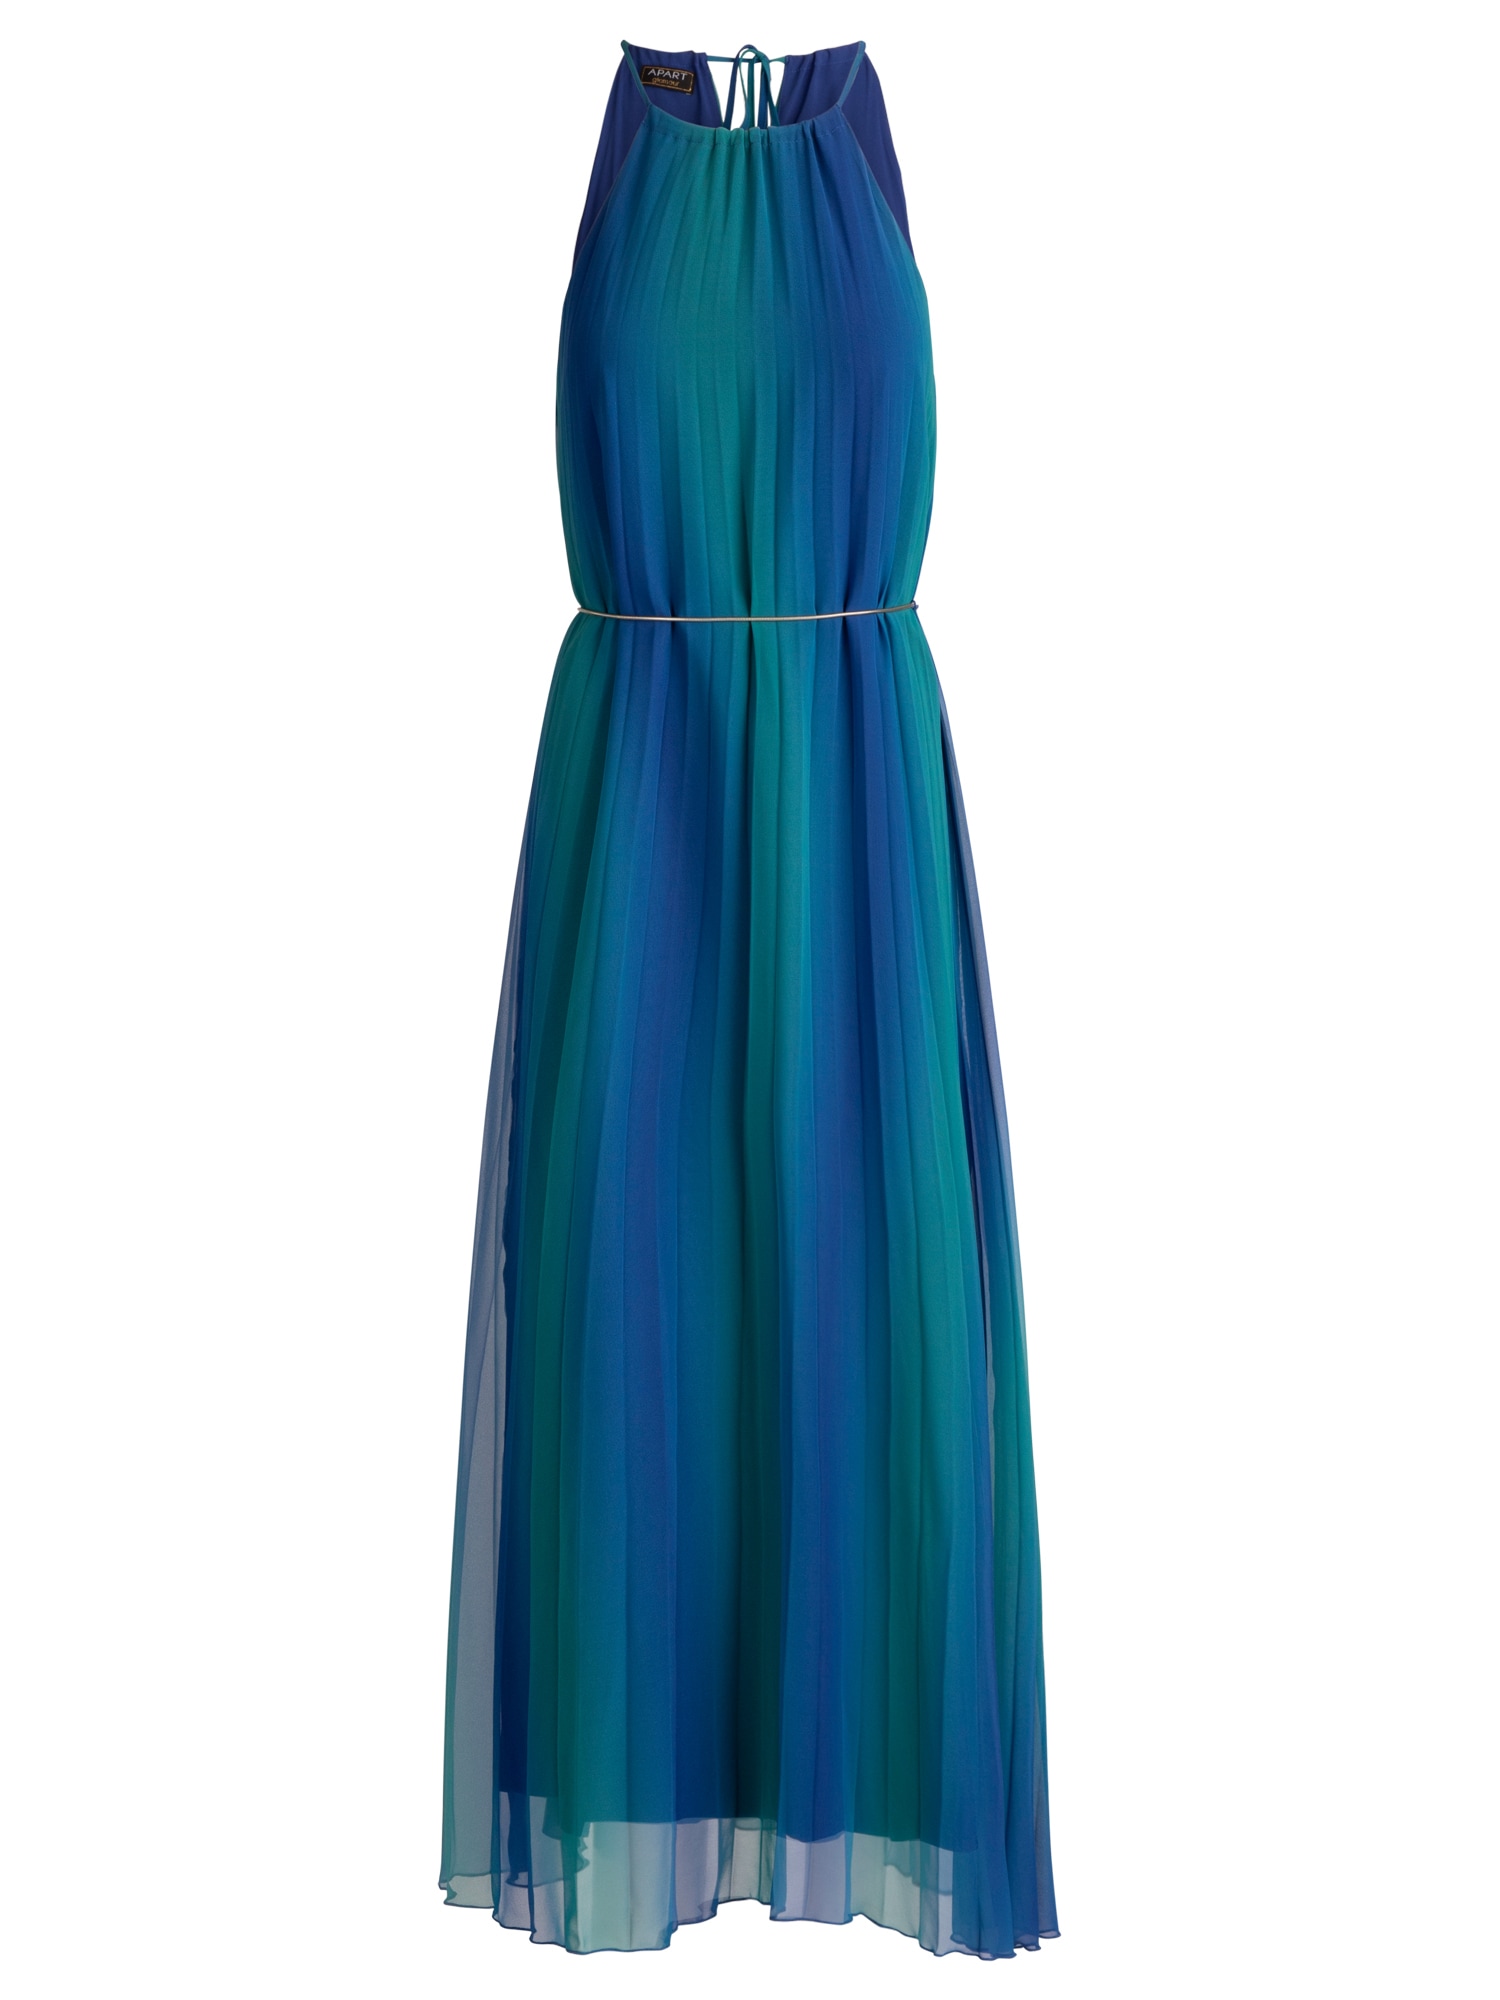 APART Vakarinė suknelė tamsiai mėlyna / smaragdinė spalva